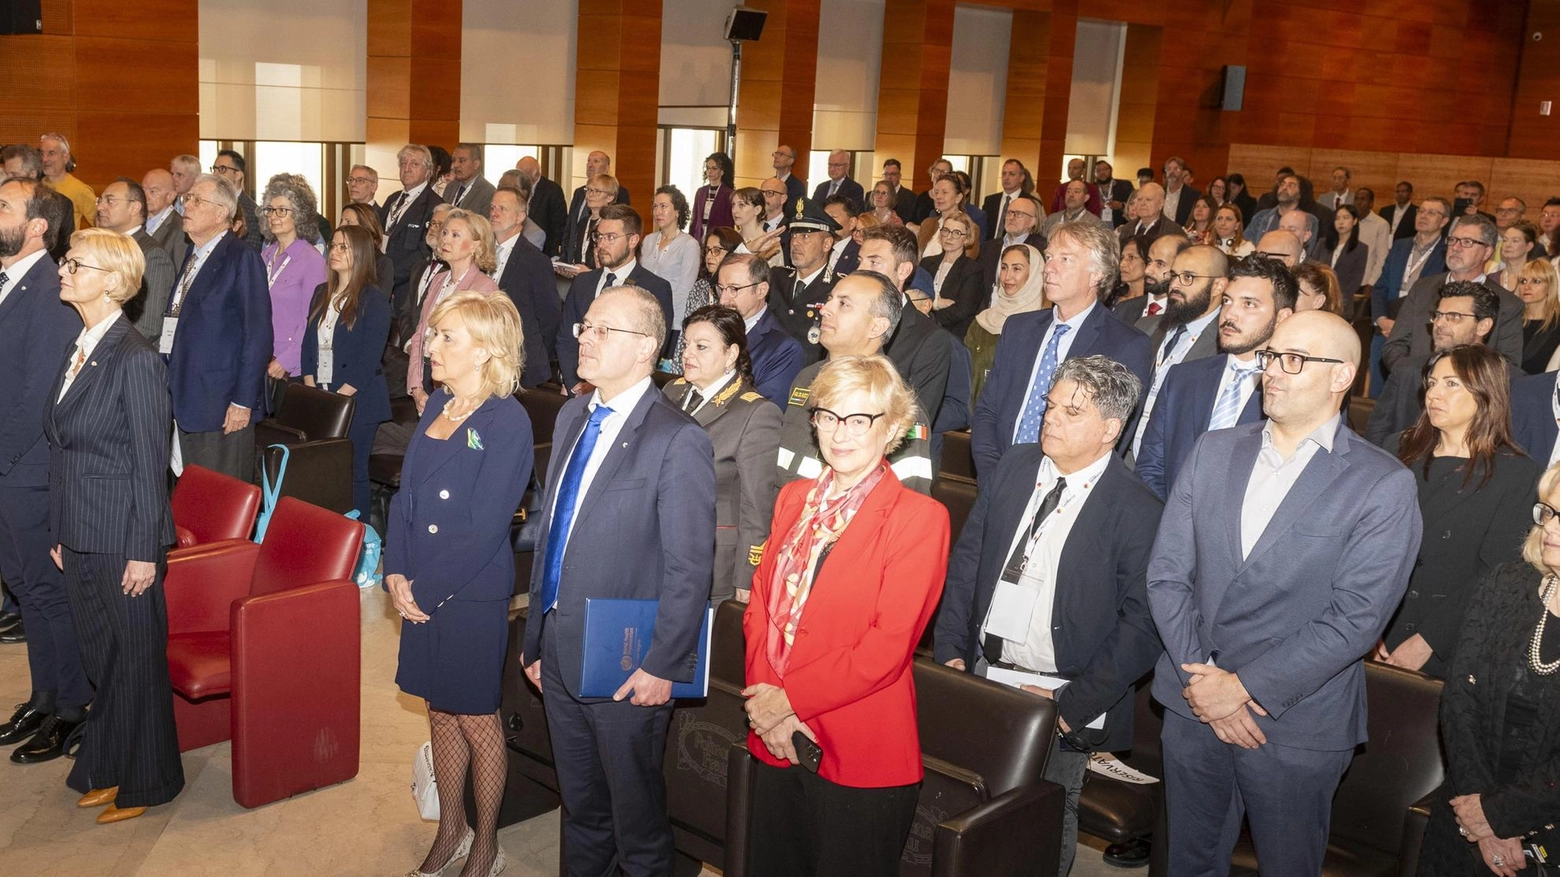 Delegati da 60 Paesi al Global Summit a San Marino affrontano sfide di inclusione e lotta alle fake news, proponendo soluzioni bioetiche per il futuro.